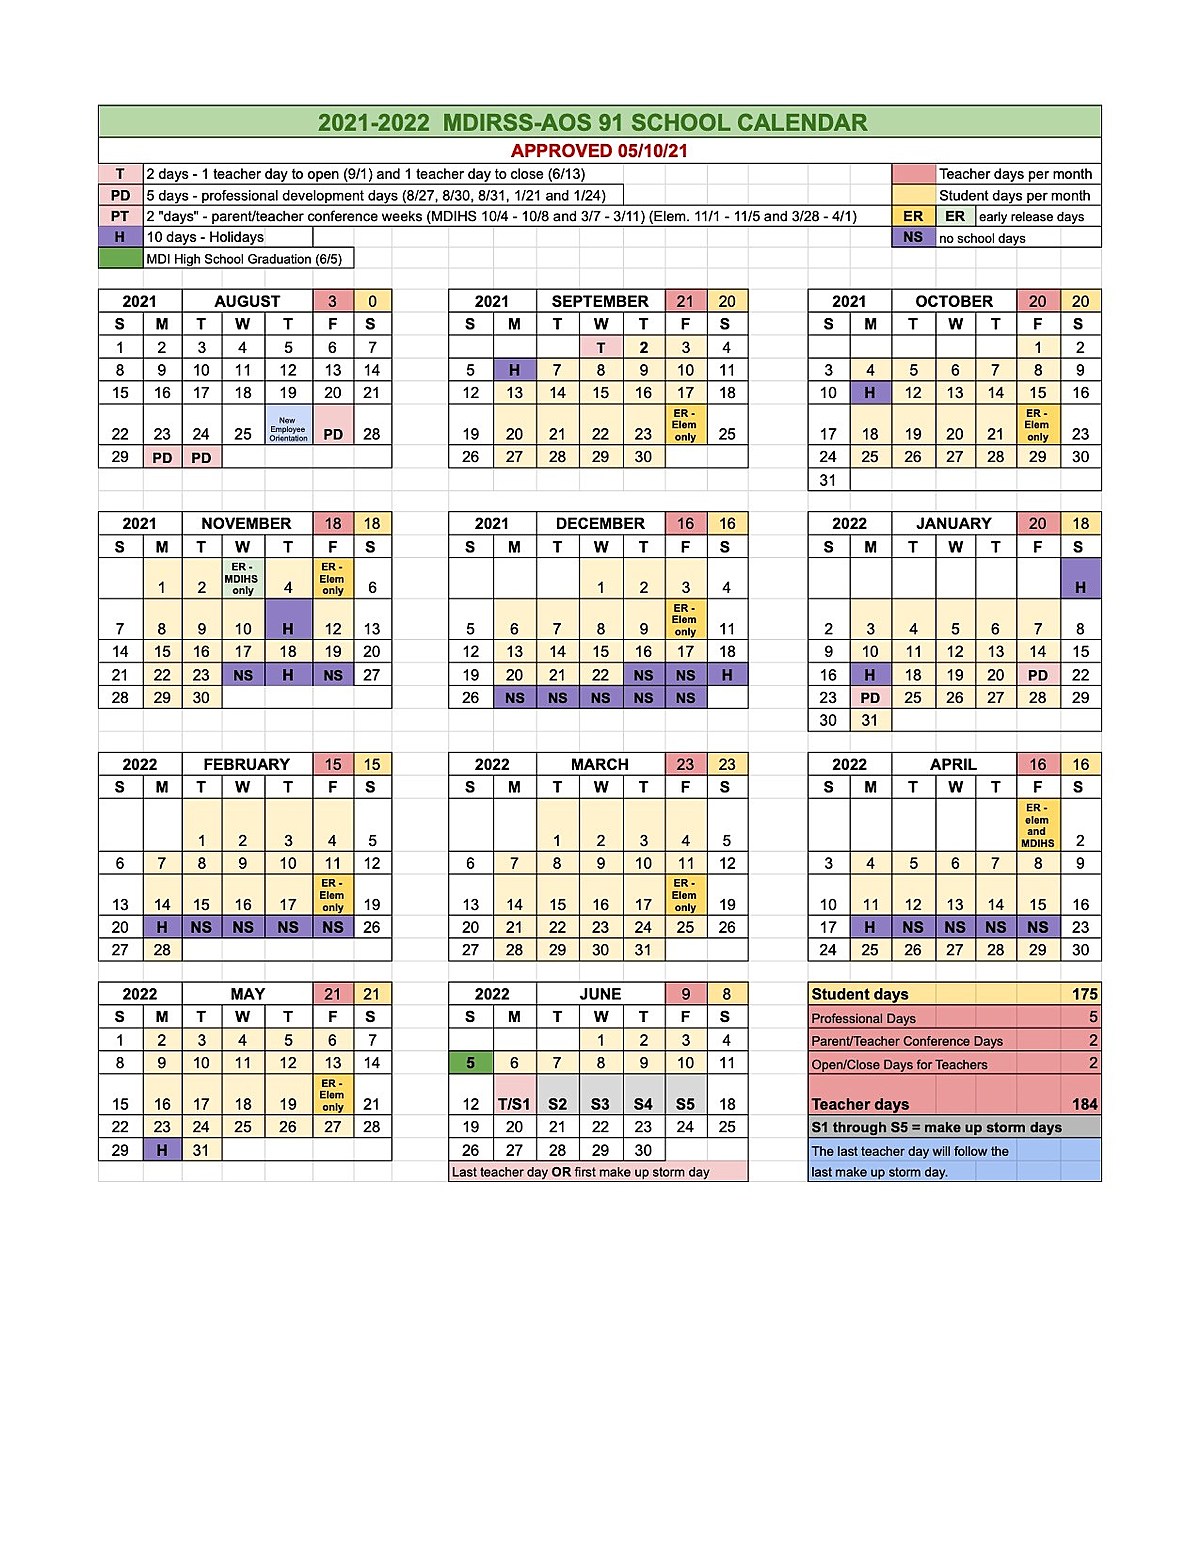 2021-2022 School Calendar For Aos 91